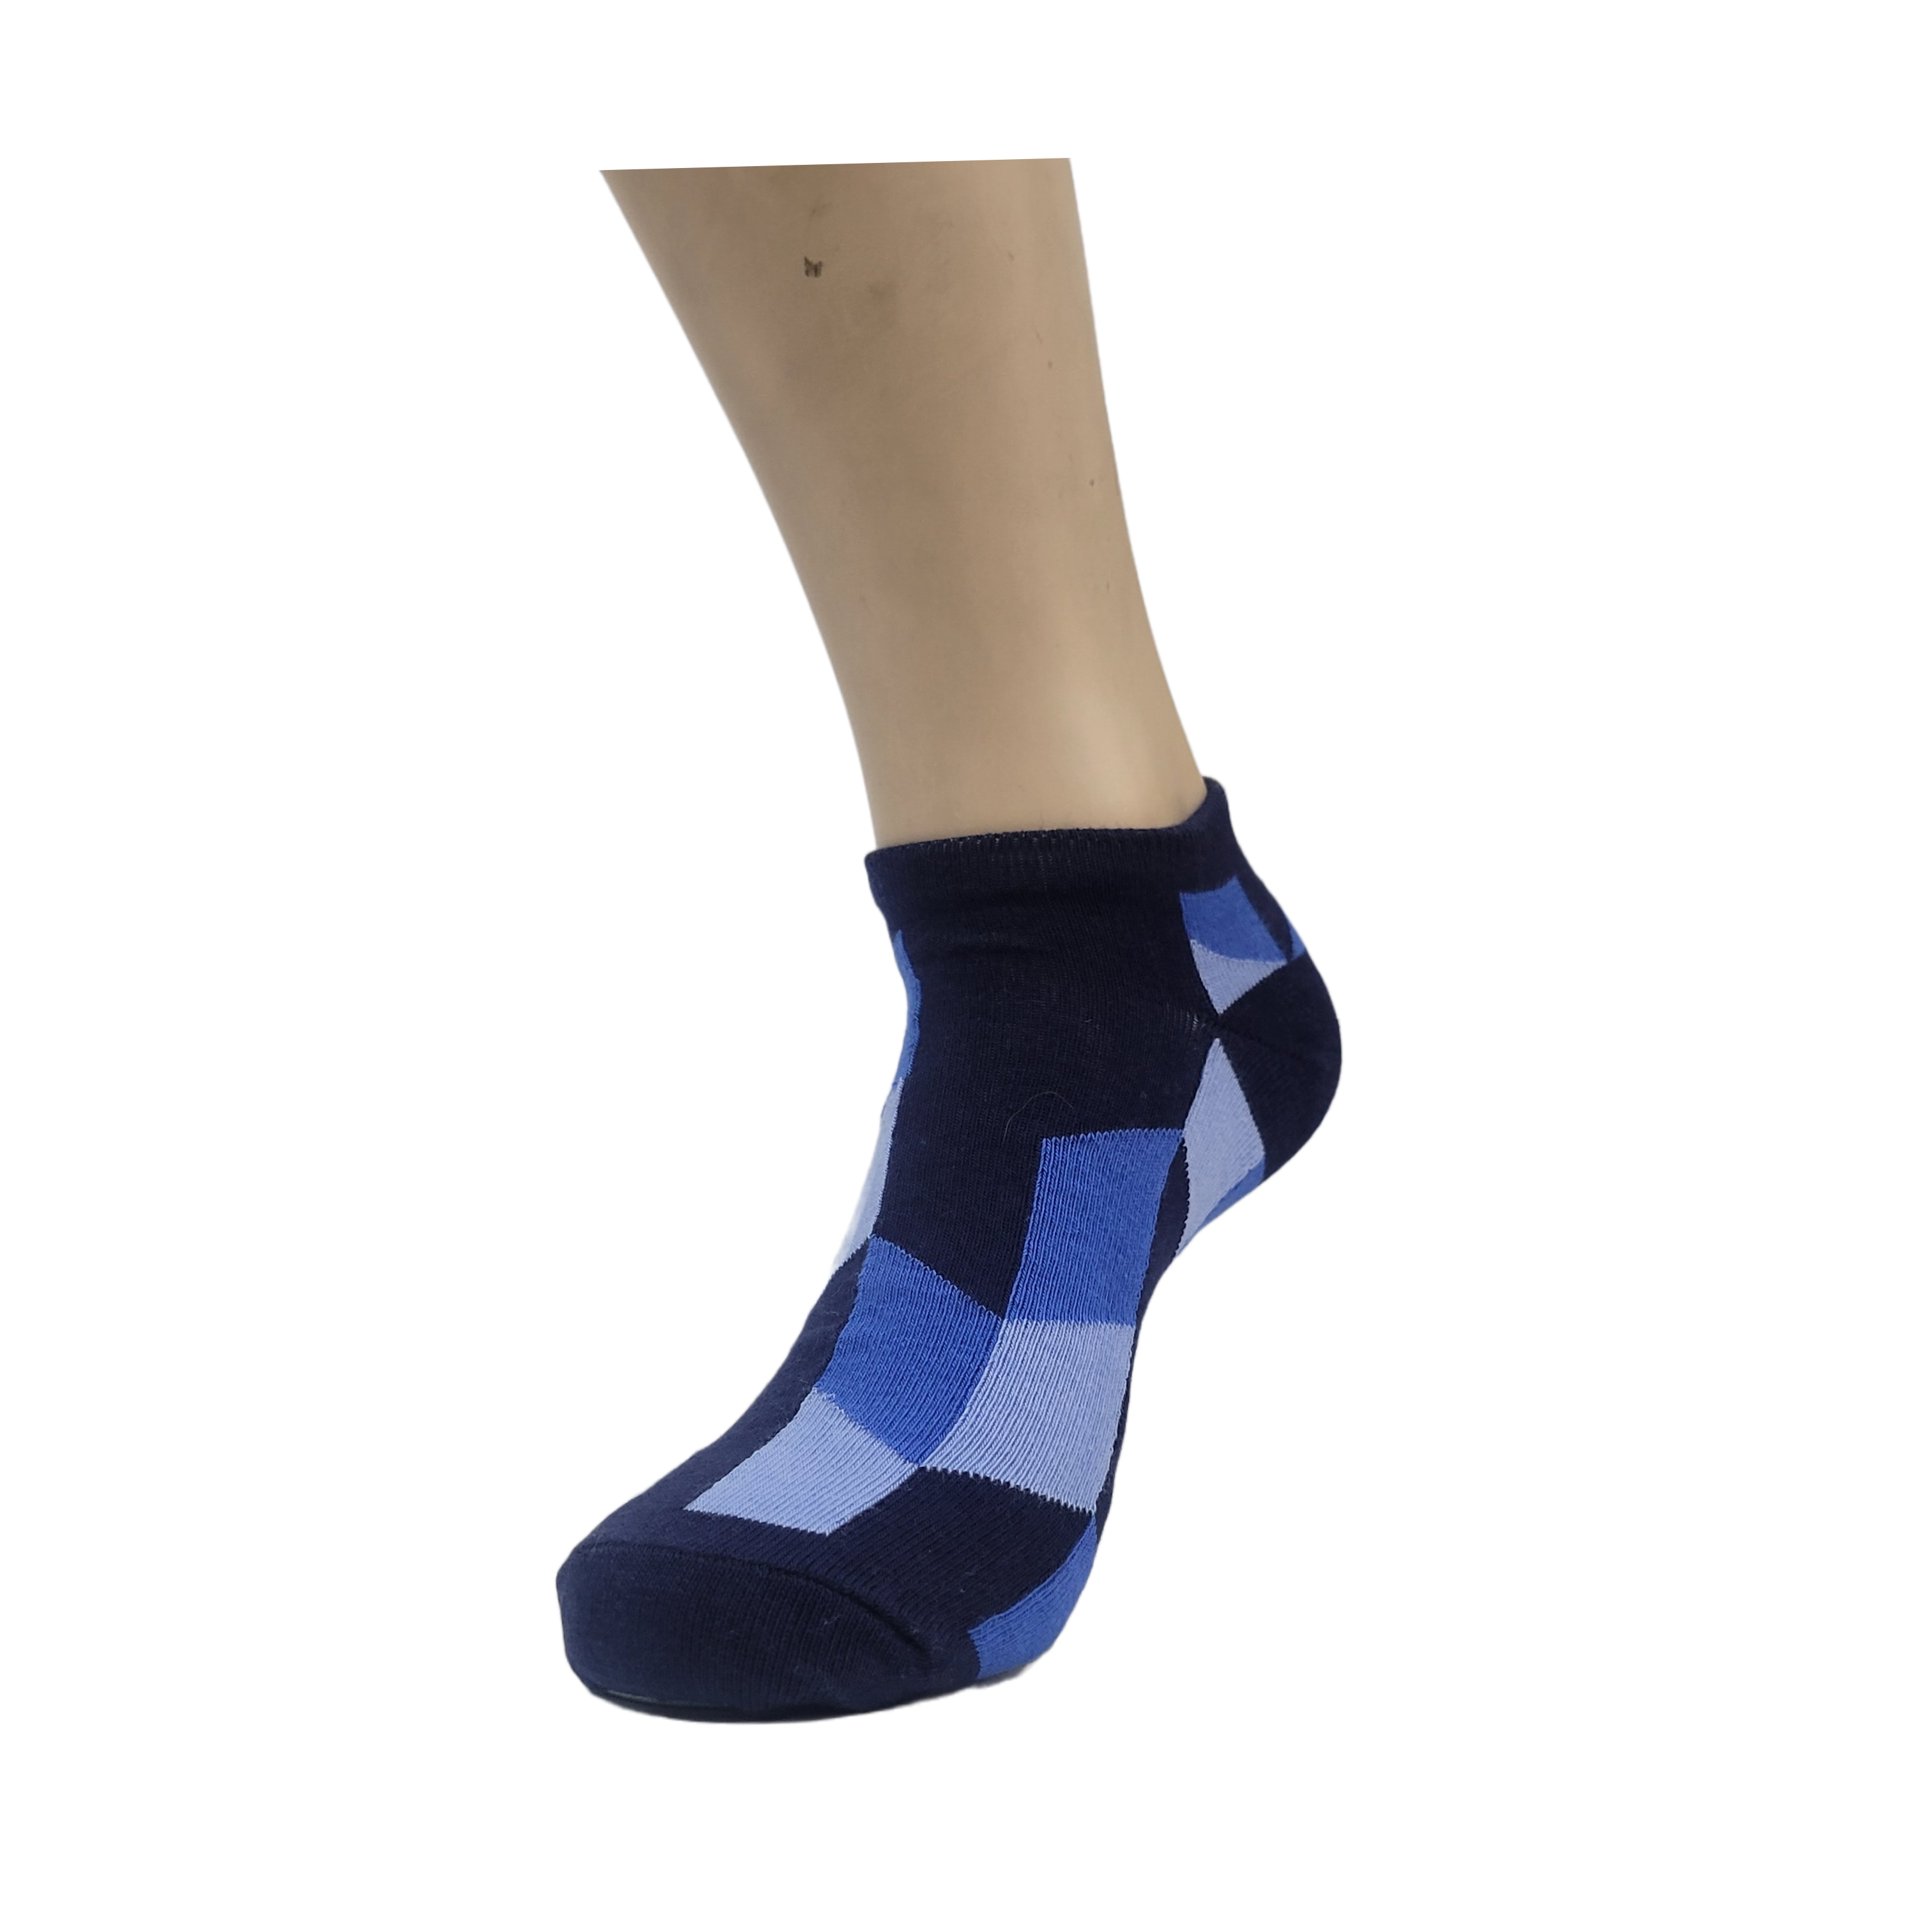 Blue Patterned Ankle Socks (Adult Medium)